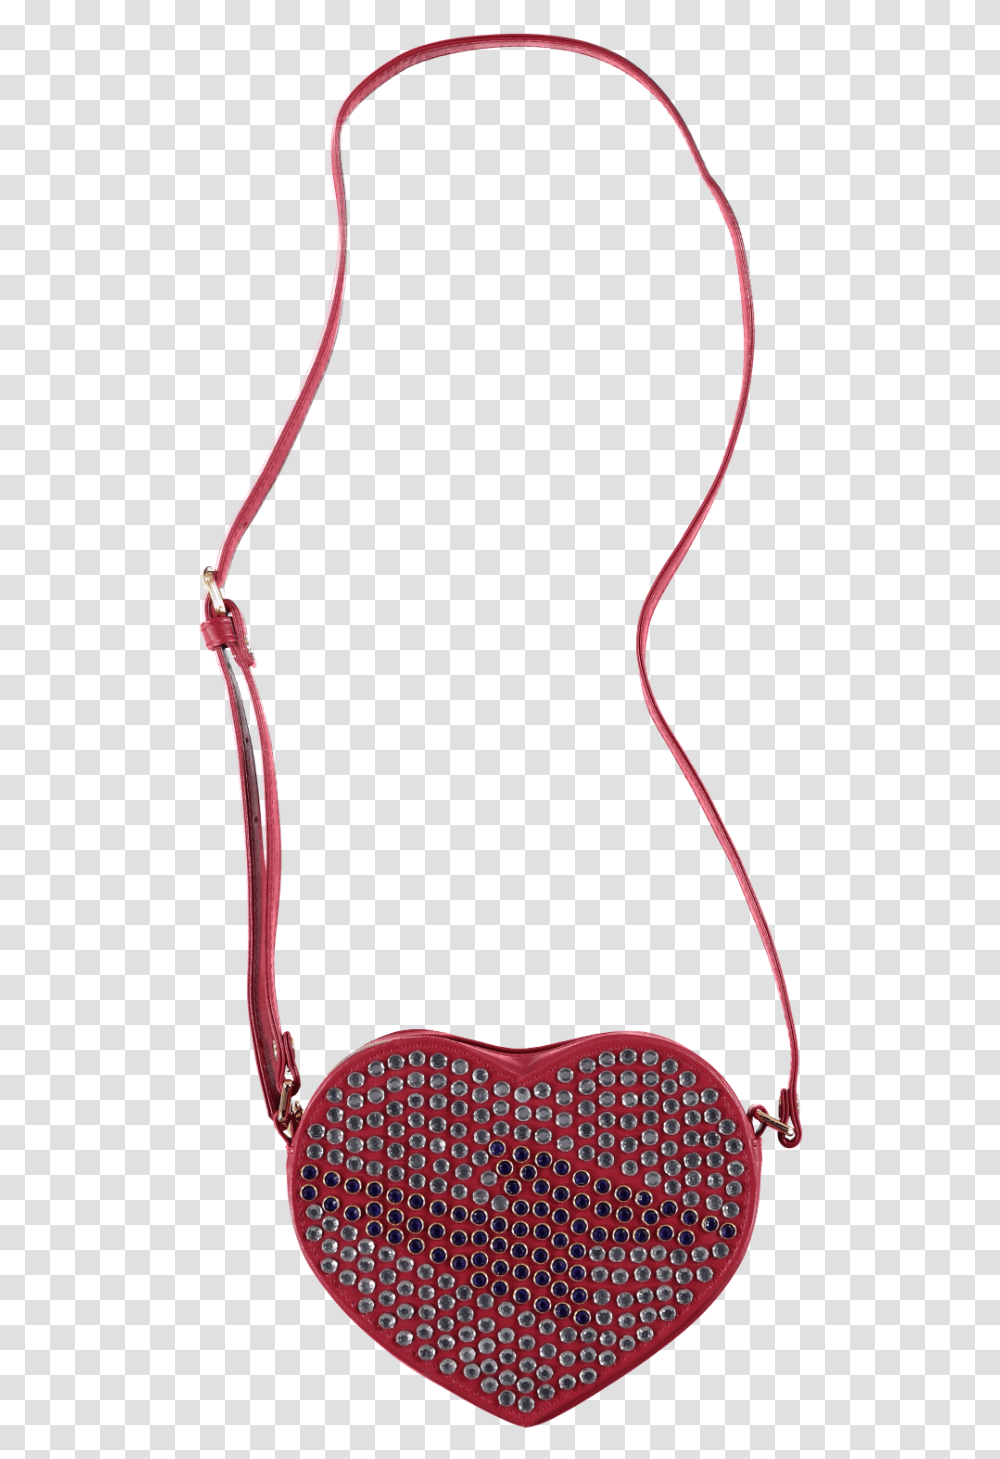 Lightning Bolt Diamante Heart Shaped Handbag Red Full Size Shoulder Bag, Whip Transparent Png